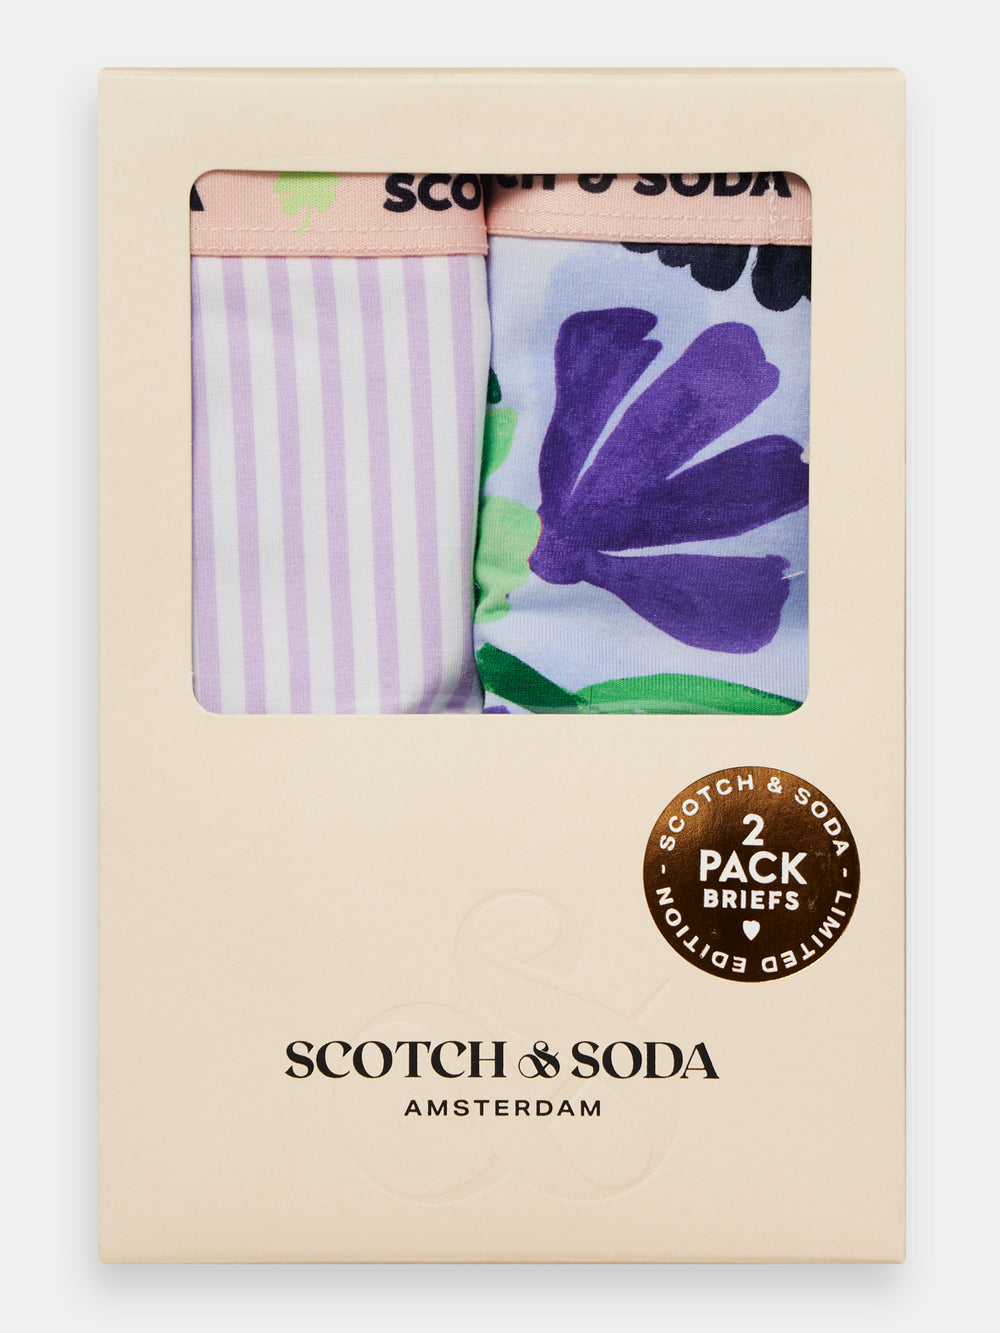 2-Pack printed briefs - Scotch & Soda NZ